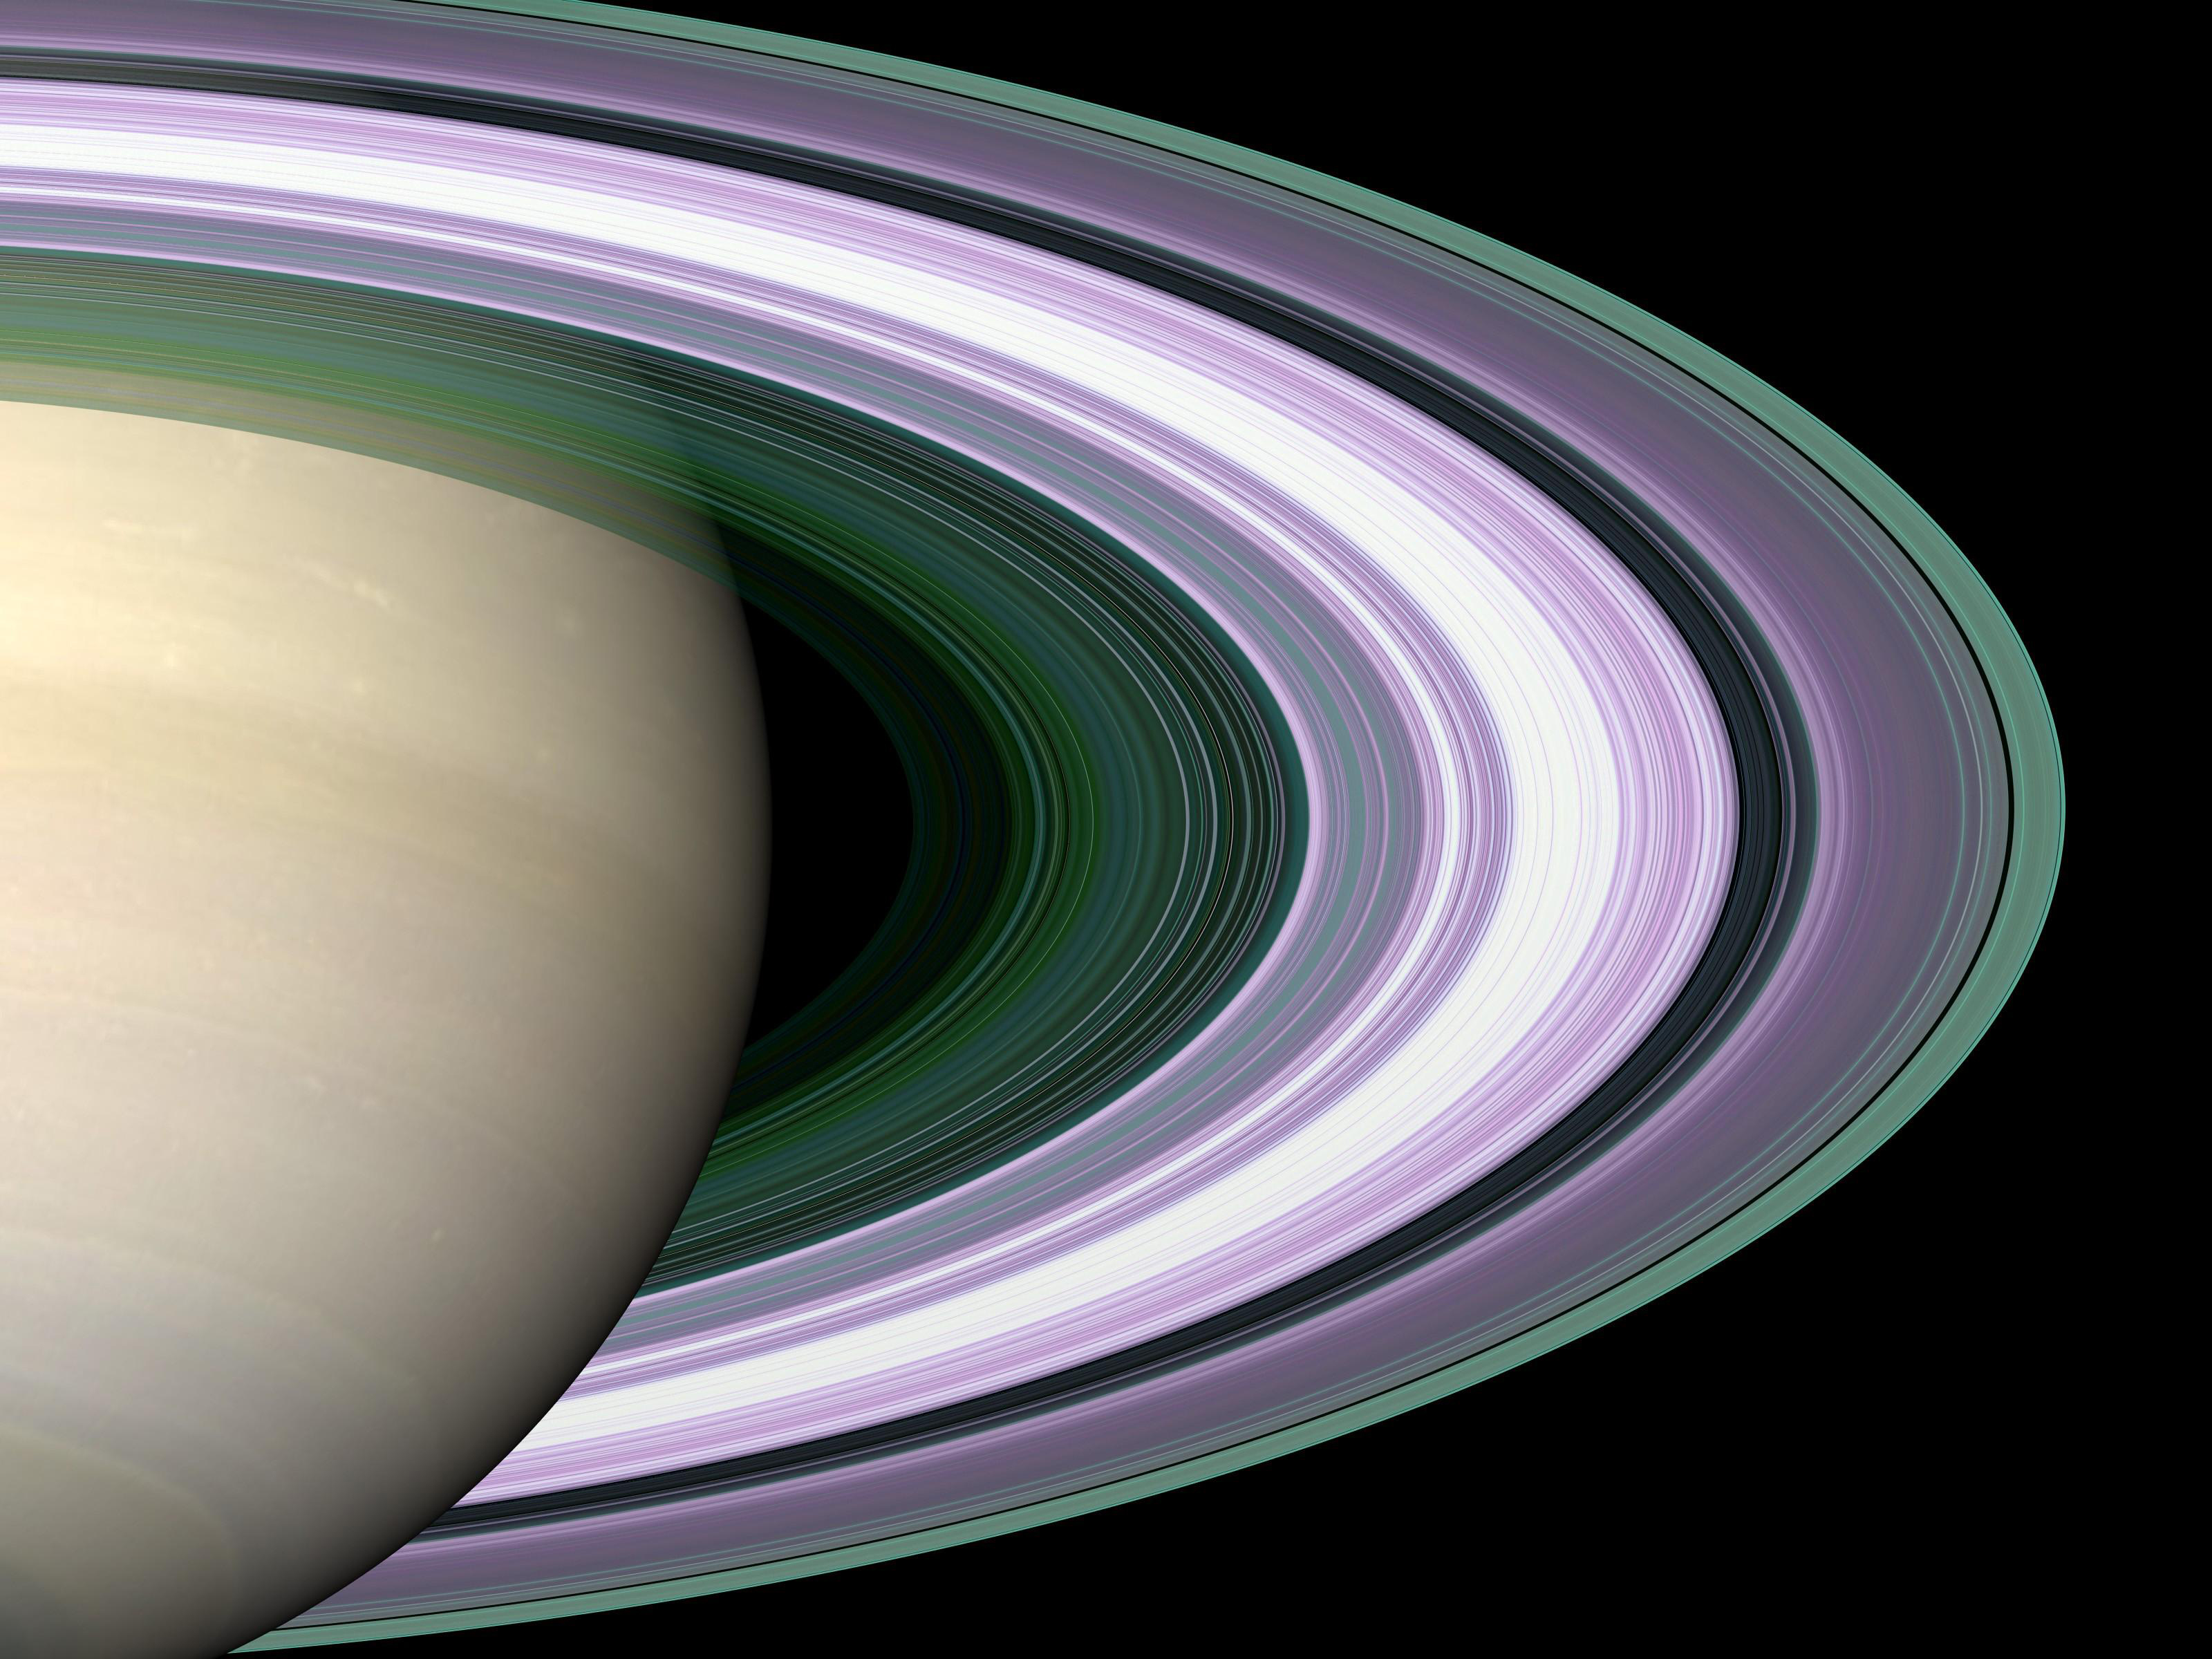 수많은 얇은 고리들로 이루어져 있는 토성의 고리 확대 사진